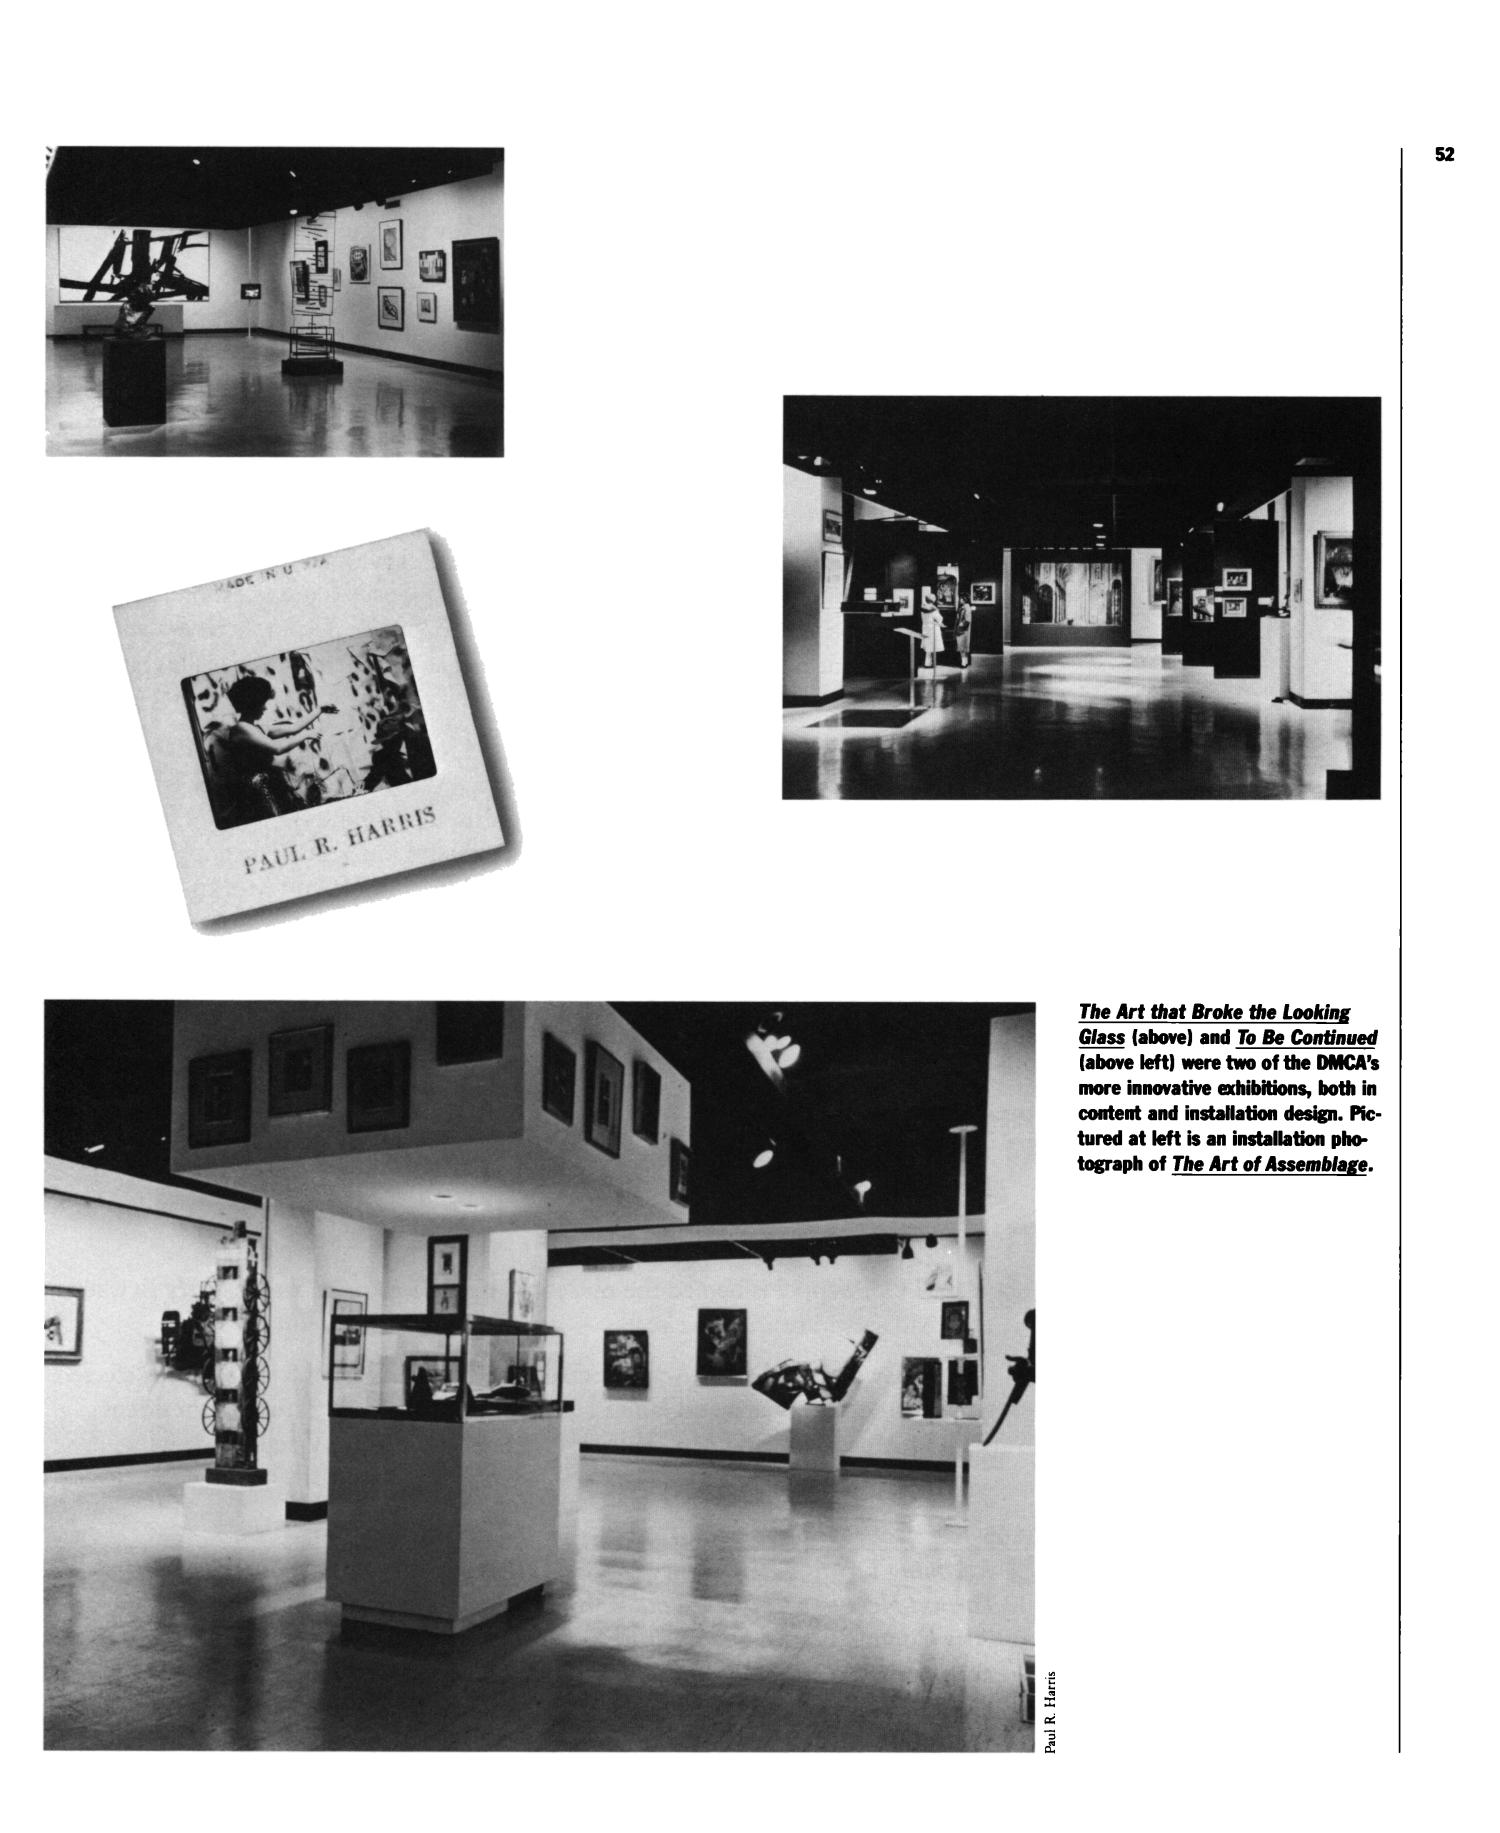 NOW/THEN/AGAIN: Contemporary Art in Dallas 1949-1989
                                                
                                                    52
                                                